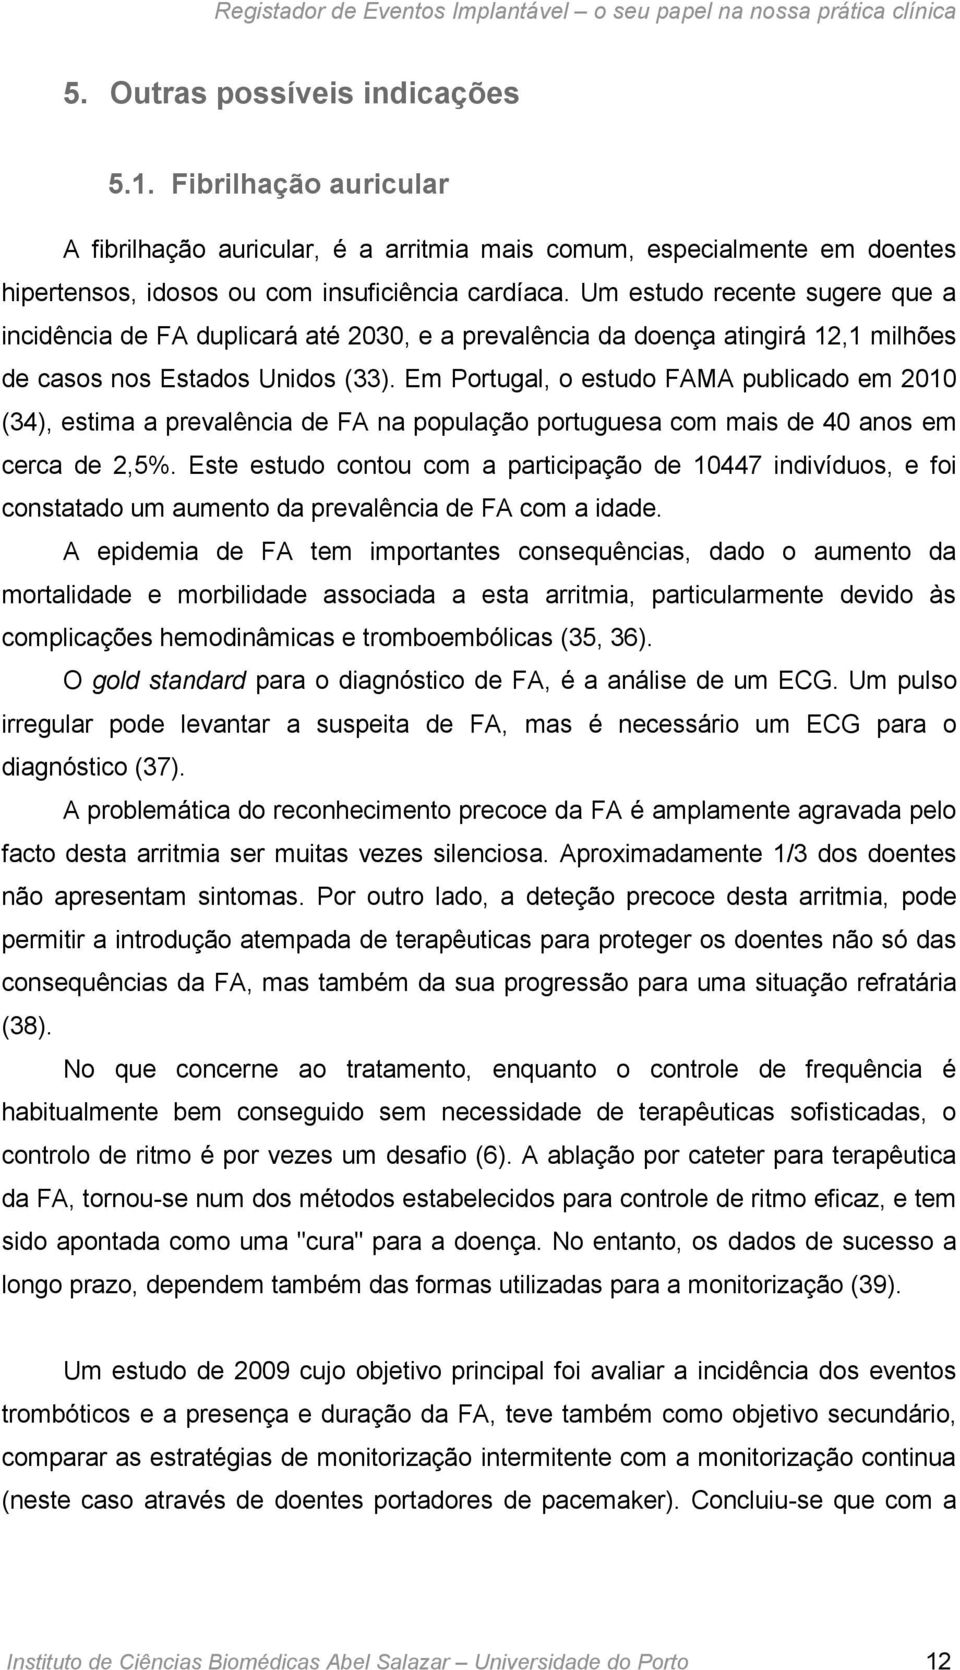 Em Portugal, o estudo FAMA publicado em 2010 (34), estima a prevalência de FA na população portuguesa com mais de 40 anos em cerca de 2,5%.